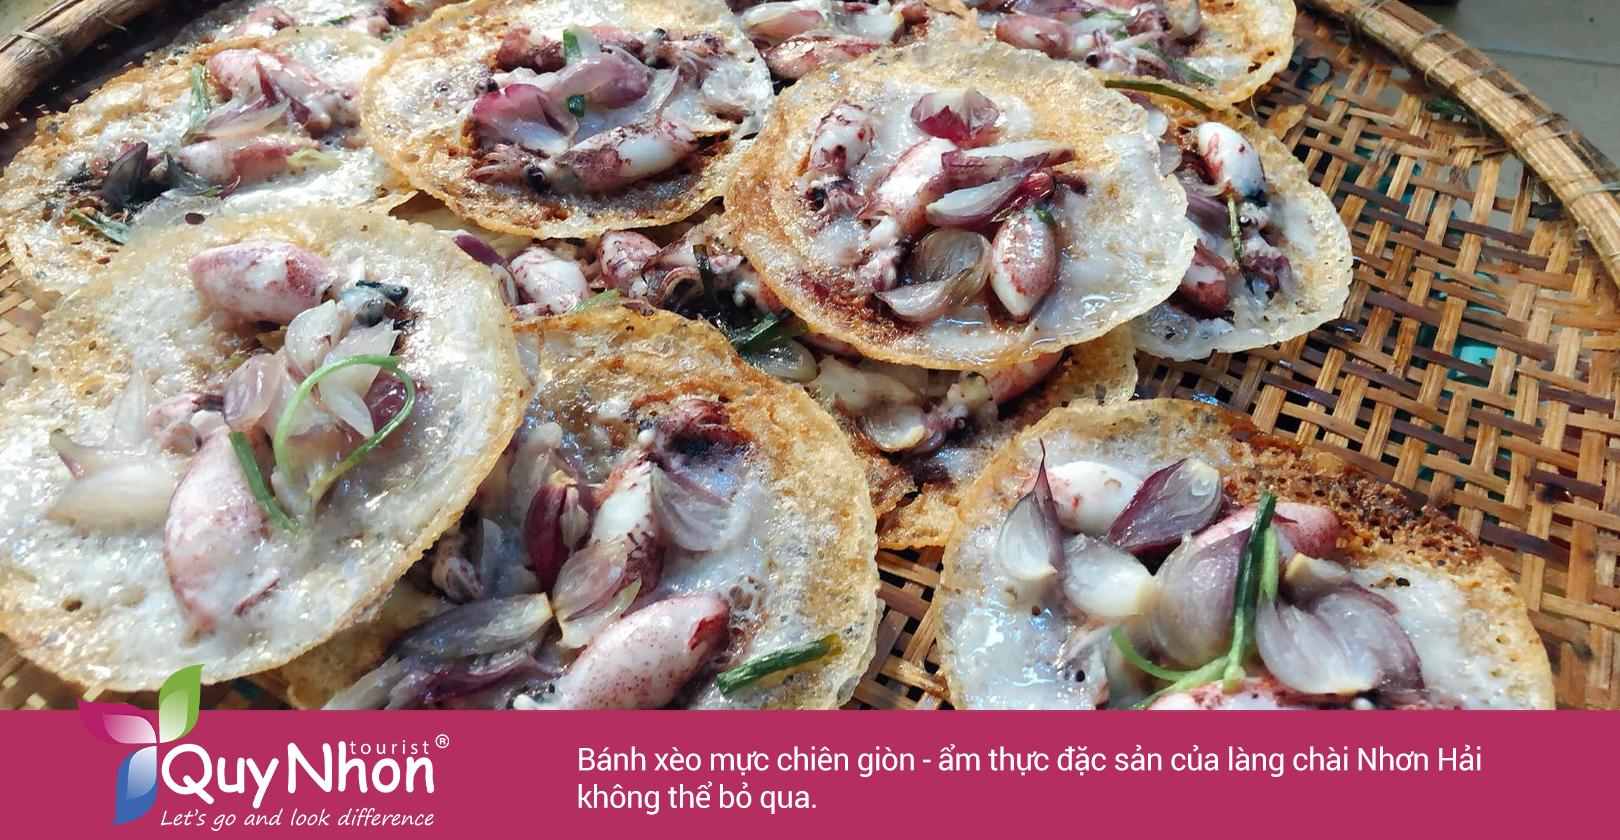 Bánh xèo mực chiên giòn - ẩm thực đặc sản của làng chài Nhơn Hải không thể bỏ qua. Du lịch tự túc Hòn Khô nhất định phải ăn món này.